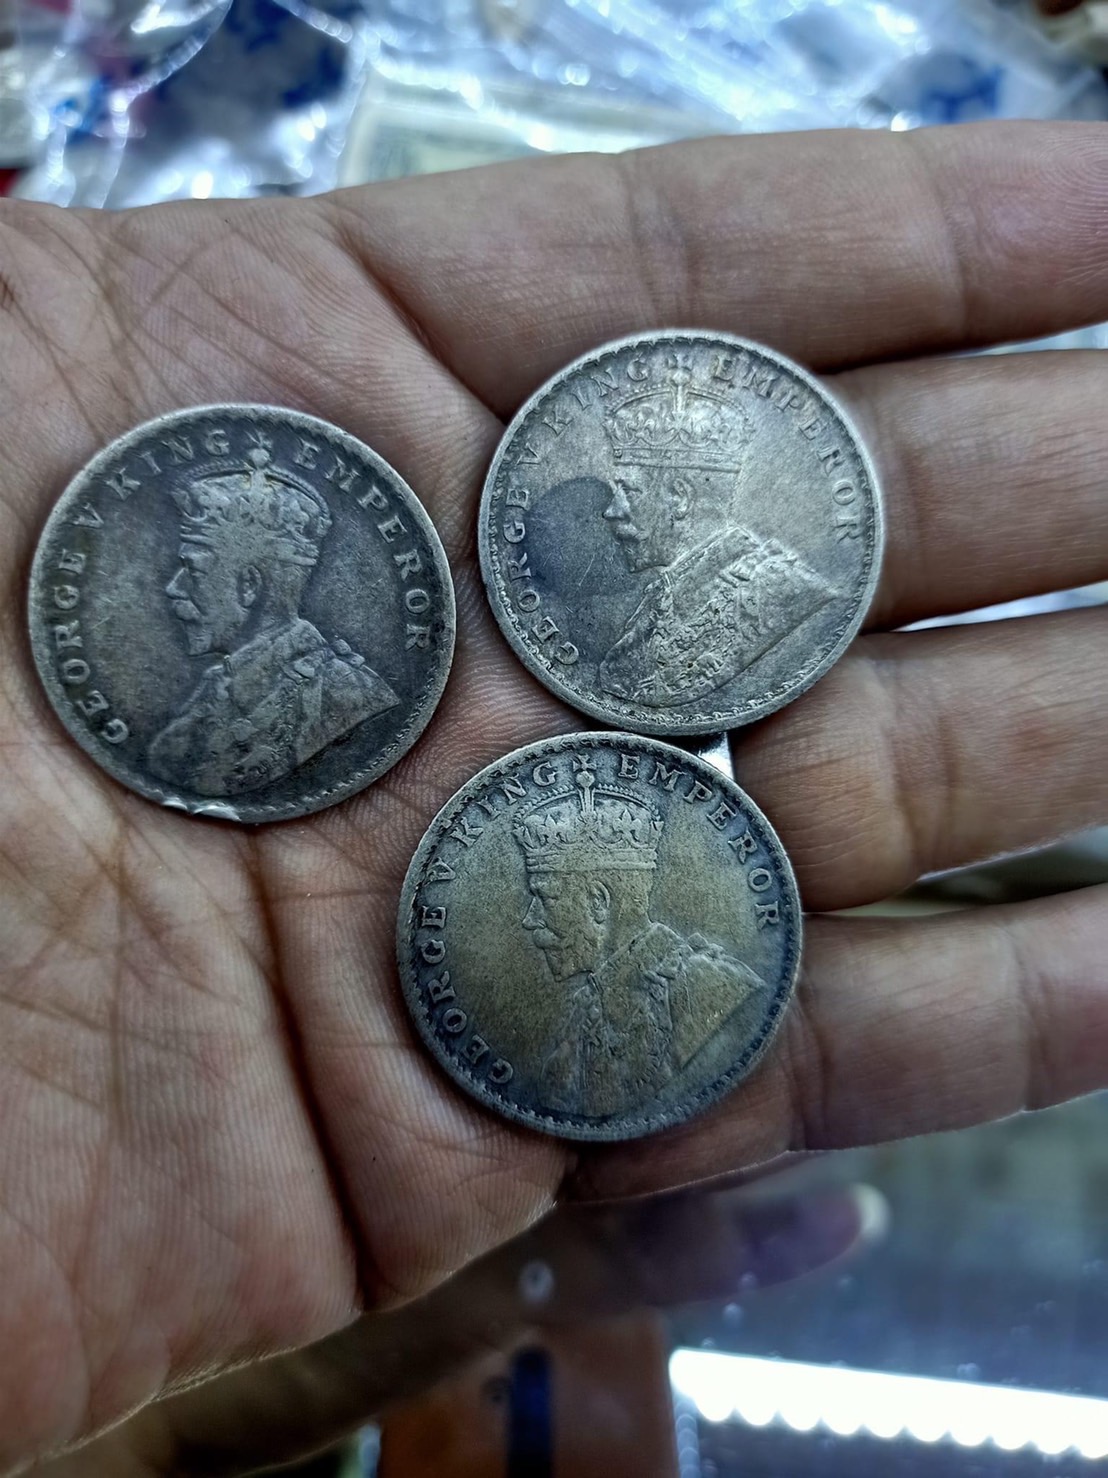 เงินแถบ” เงินรูปีอินเดียในประวัติศาสตร์ล้านนา - Chiang Mai News